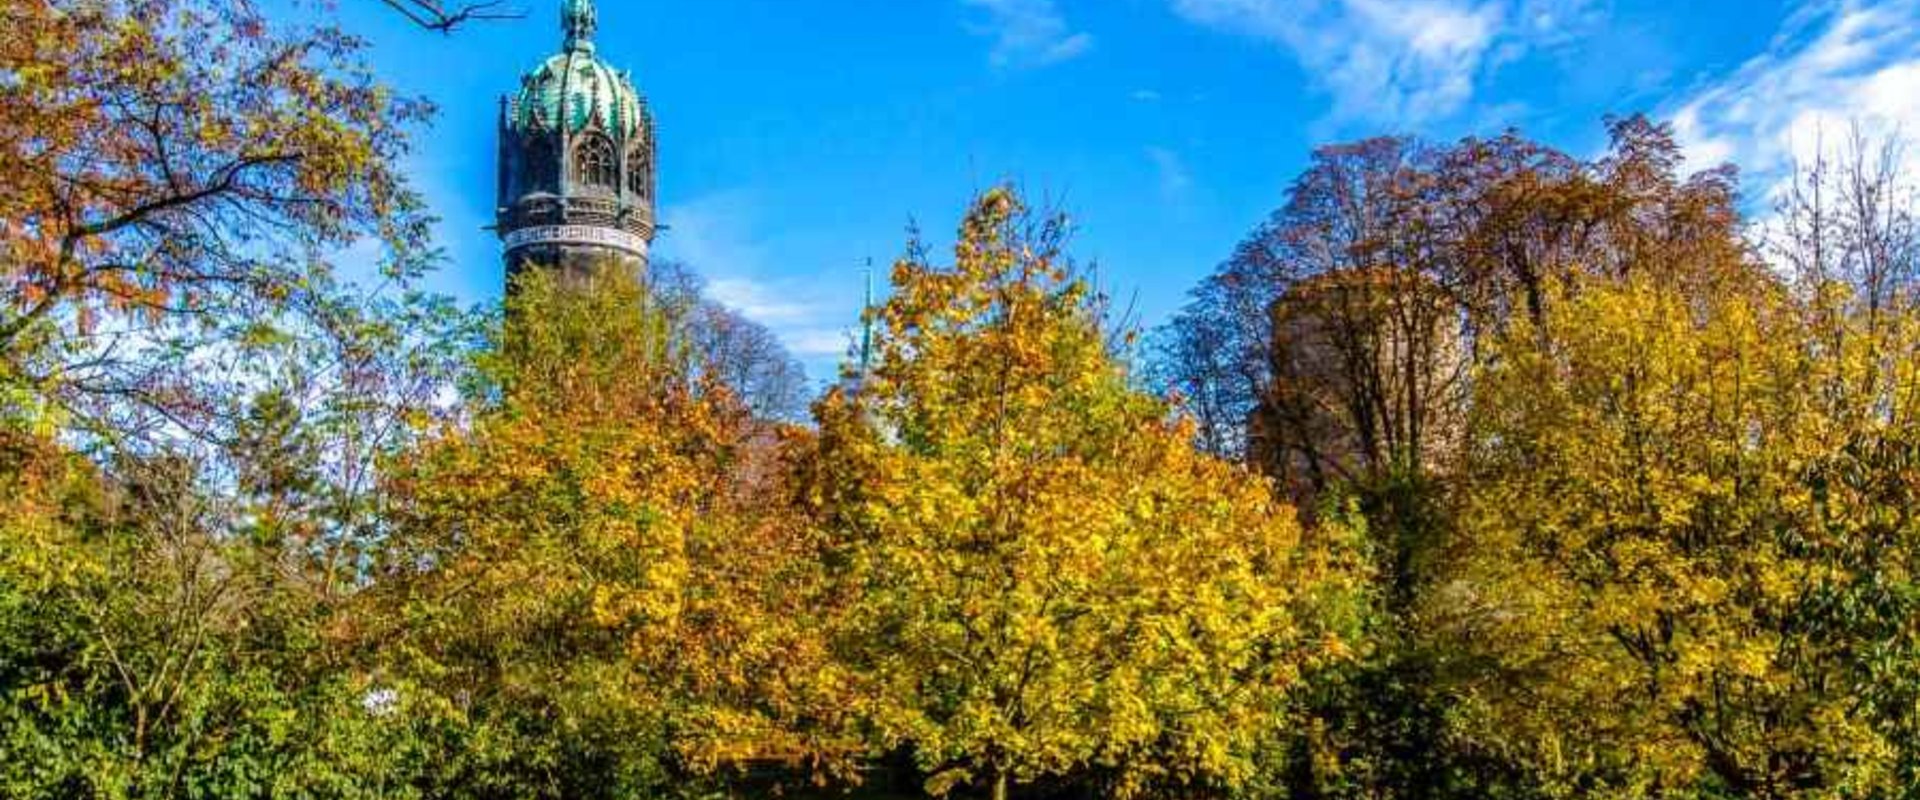 Schlosswiese mit Turm der Schlosskirche im Herbst